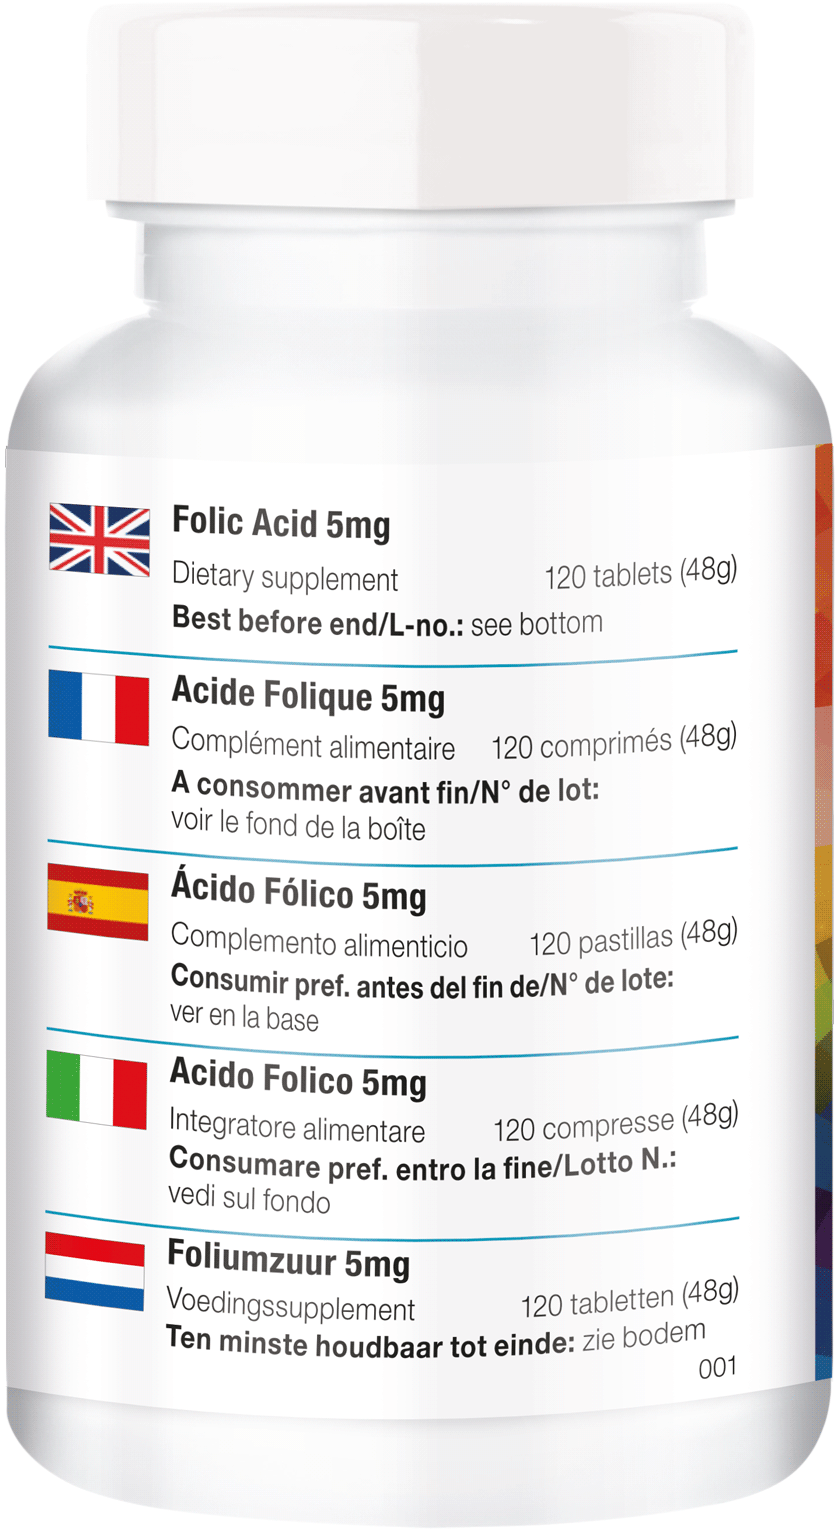 Folic Acid 5mg - Prescription Drug Clipart (1000x1641), Png Download